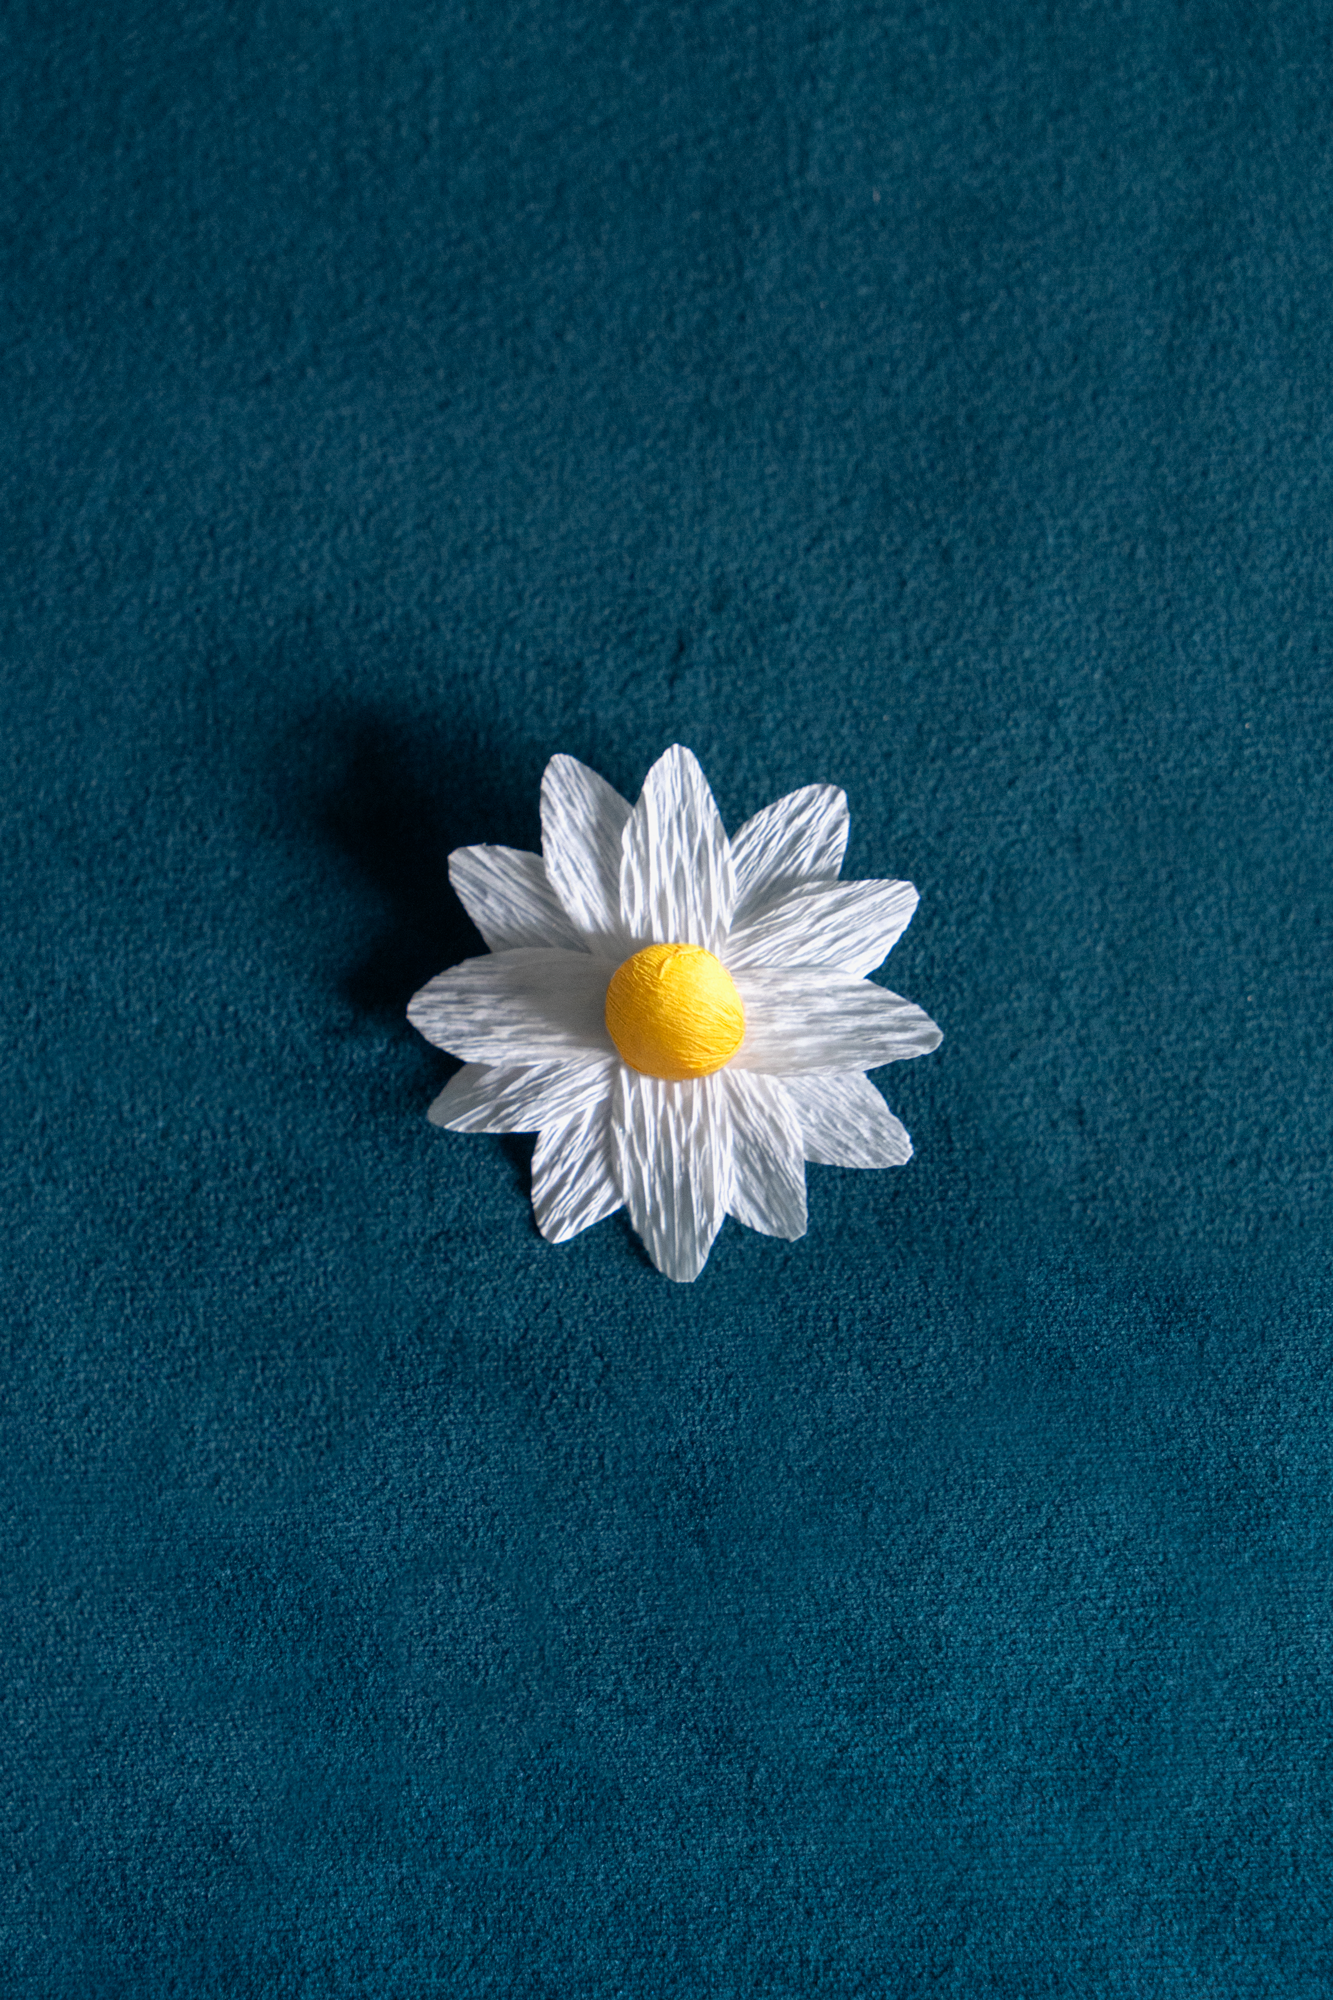 Broches Marguerite de Maison Tessier couleur Perle coeur Citrine, sur tissus velour émeraude